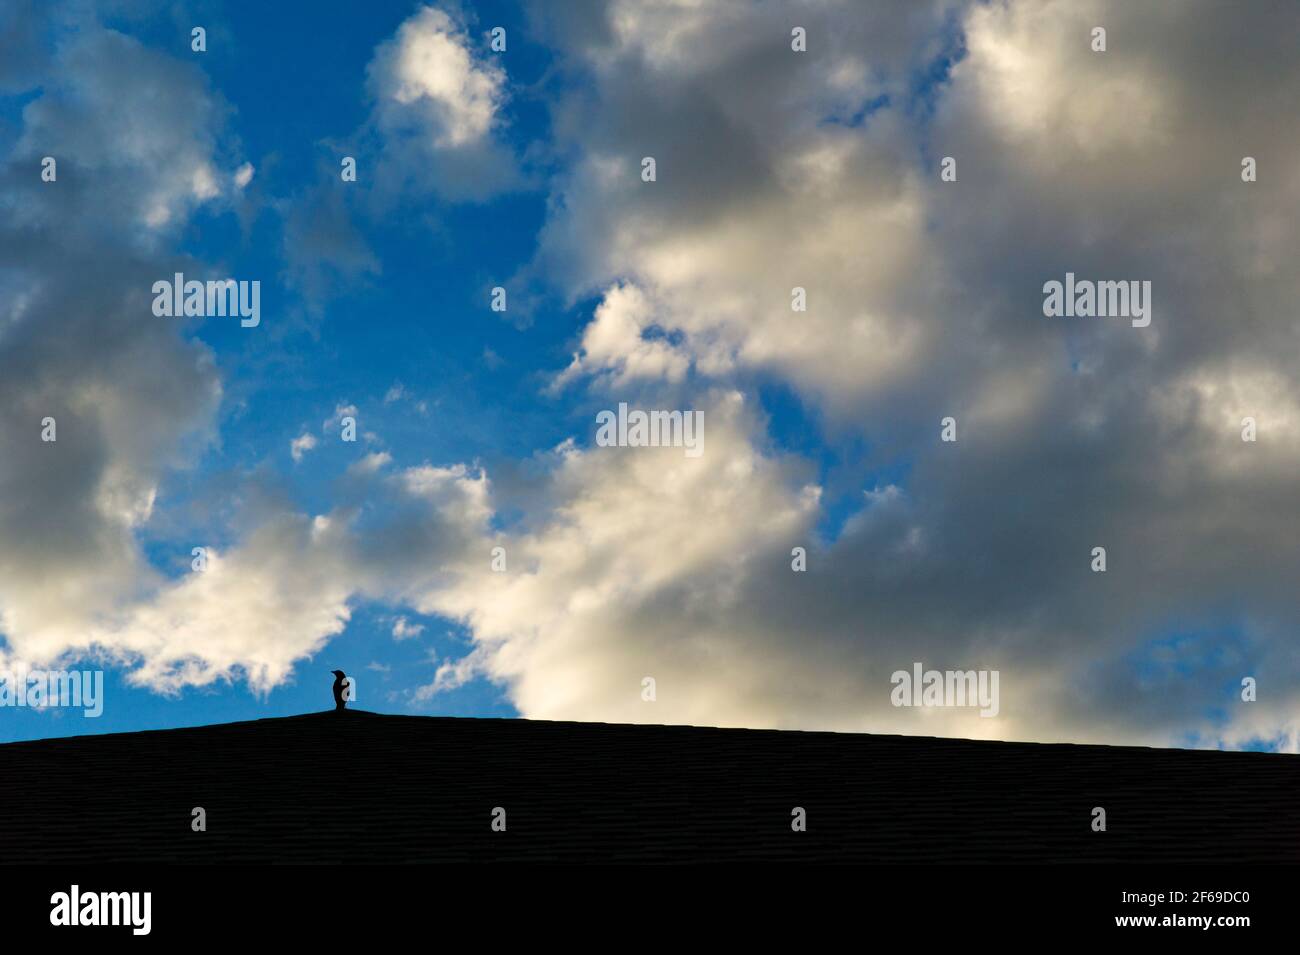 Amsel auf Dach gegen geschwollene weiße Wolken Sonnenuntergang und einem klaren blauen Himmel abhebt Stockfoto